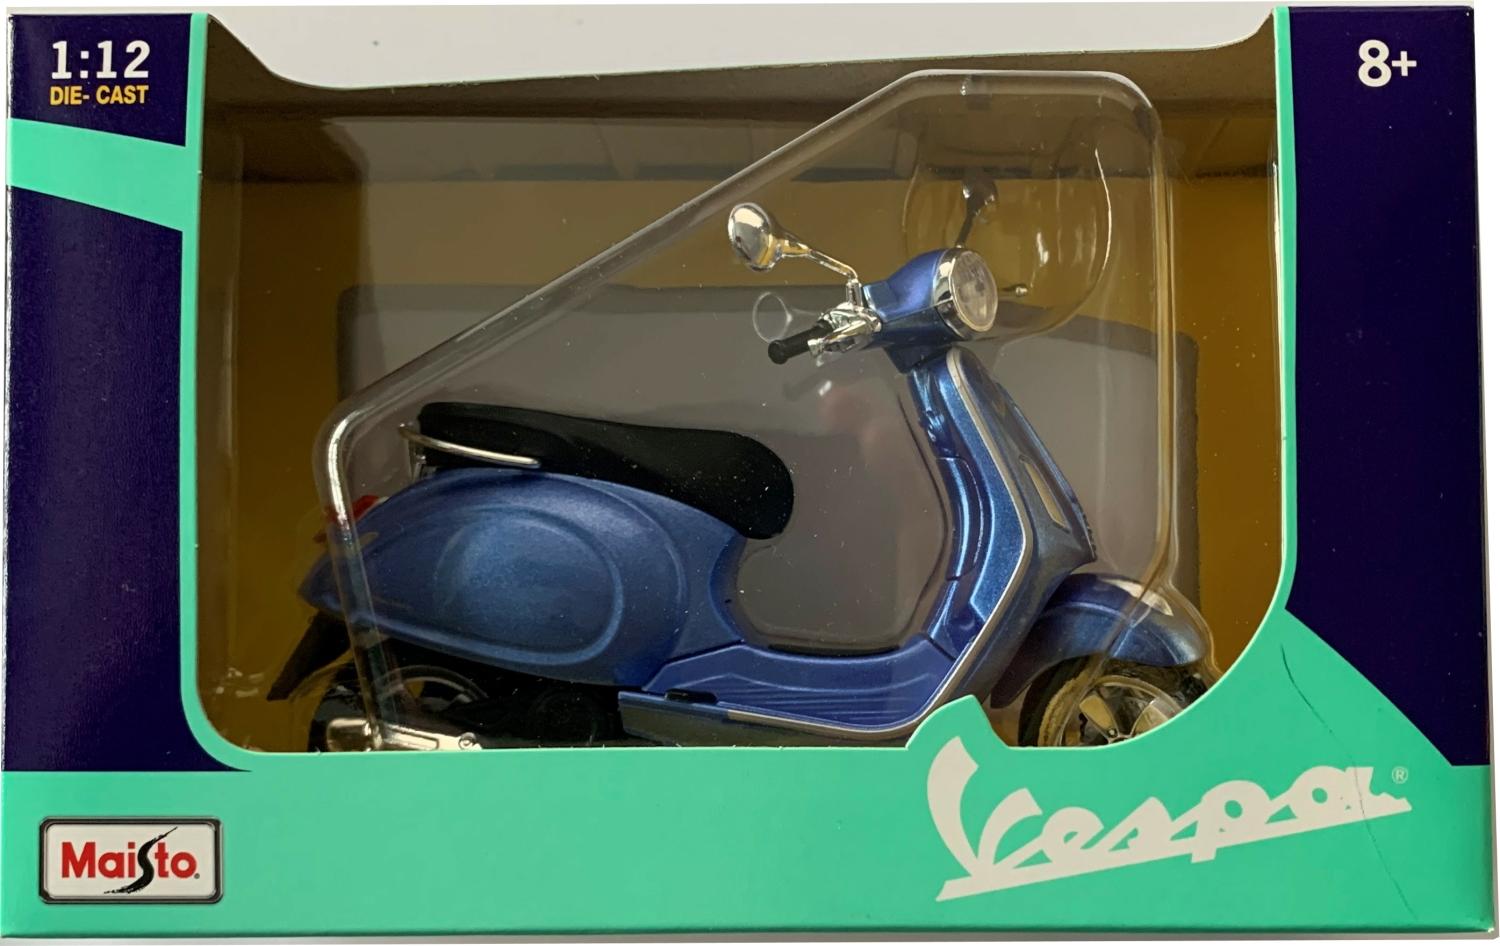 Vespa Primavera 150 in metallic blue 1:12 scale model from Maisto